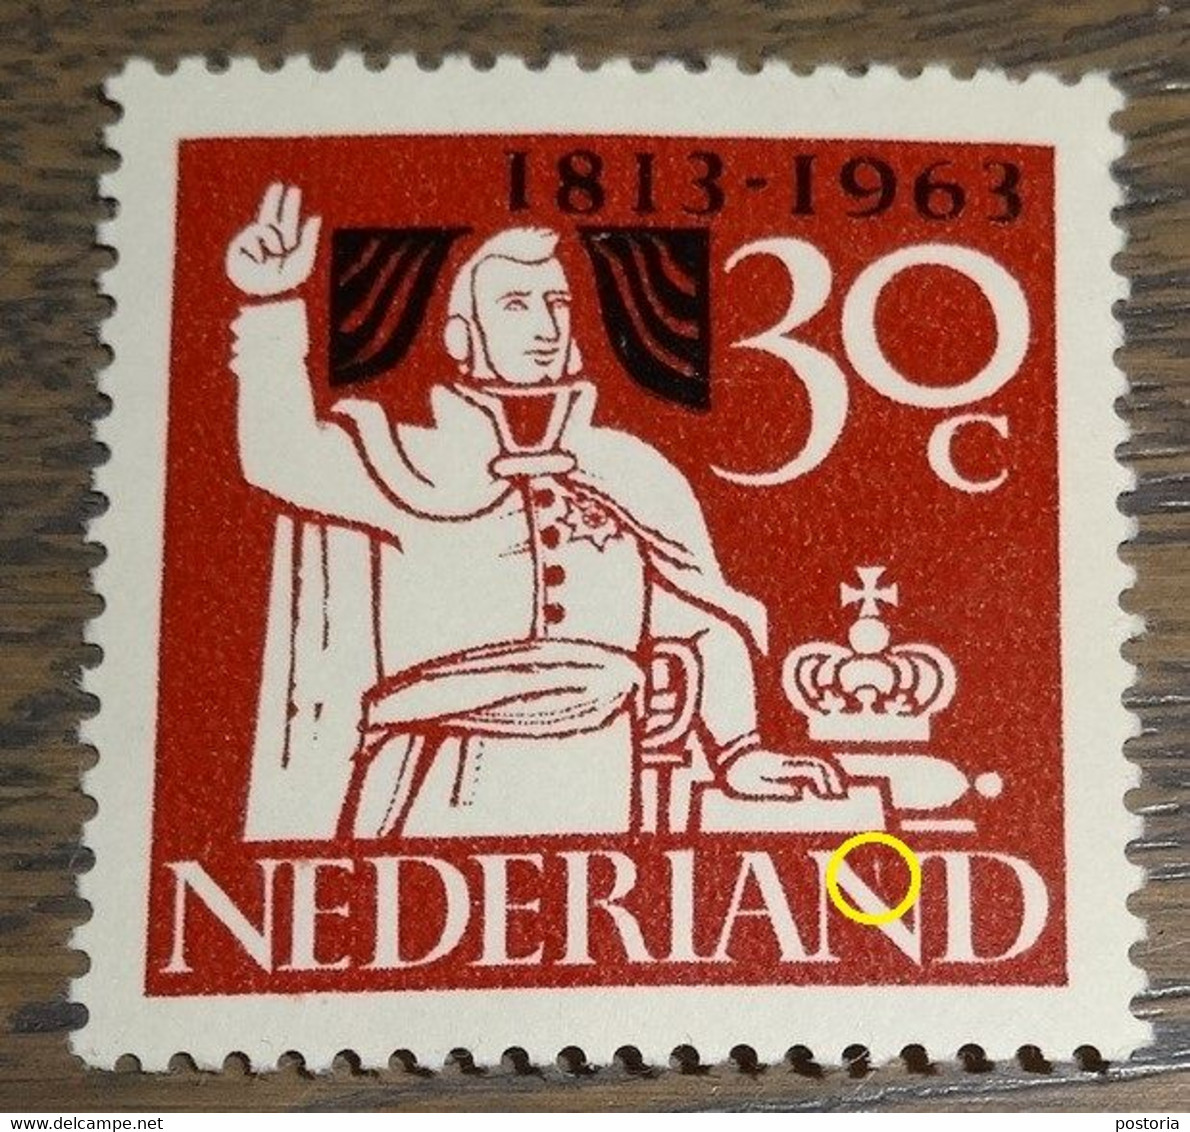 Nederland - MAST - 810 PM - 1963 - Plaatfout - Postfris - Wit Streepje In 2e N Van NEDERLAND - Abarten Und Kuriositäten